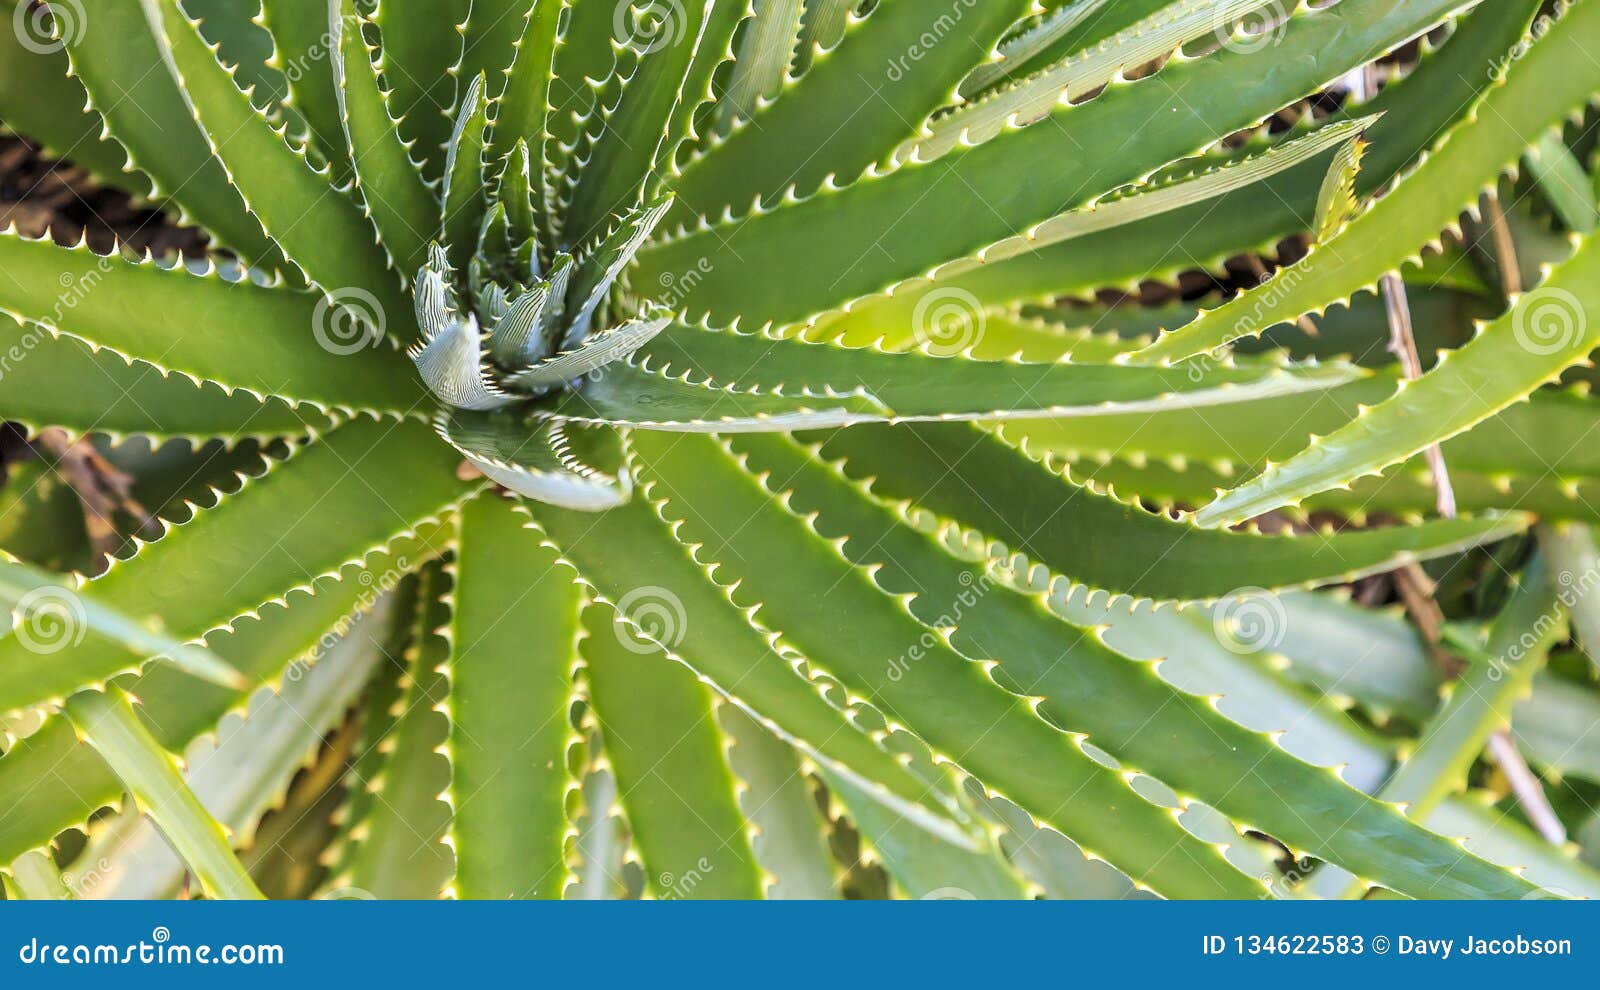 Agave At Kanapaha Botanical Gardens Stock Image Image Of Plant